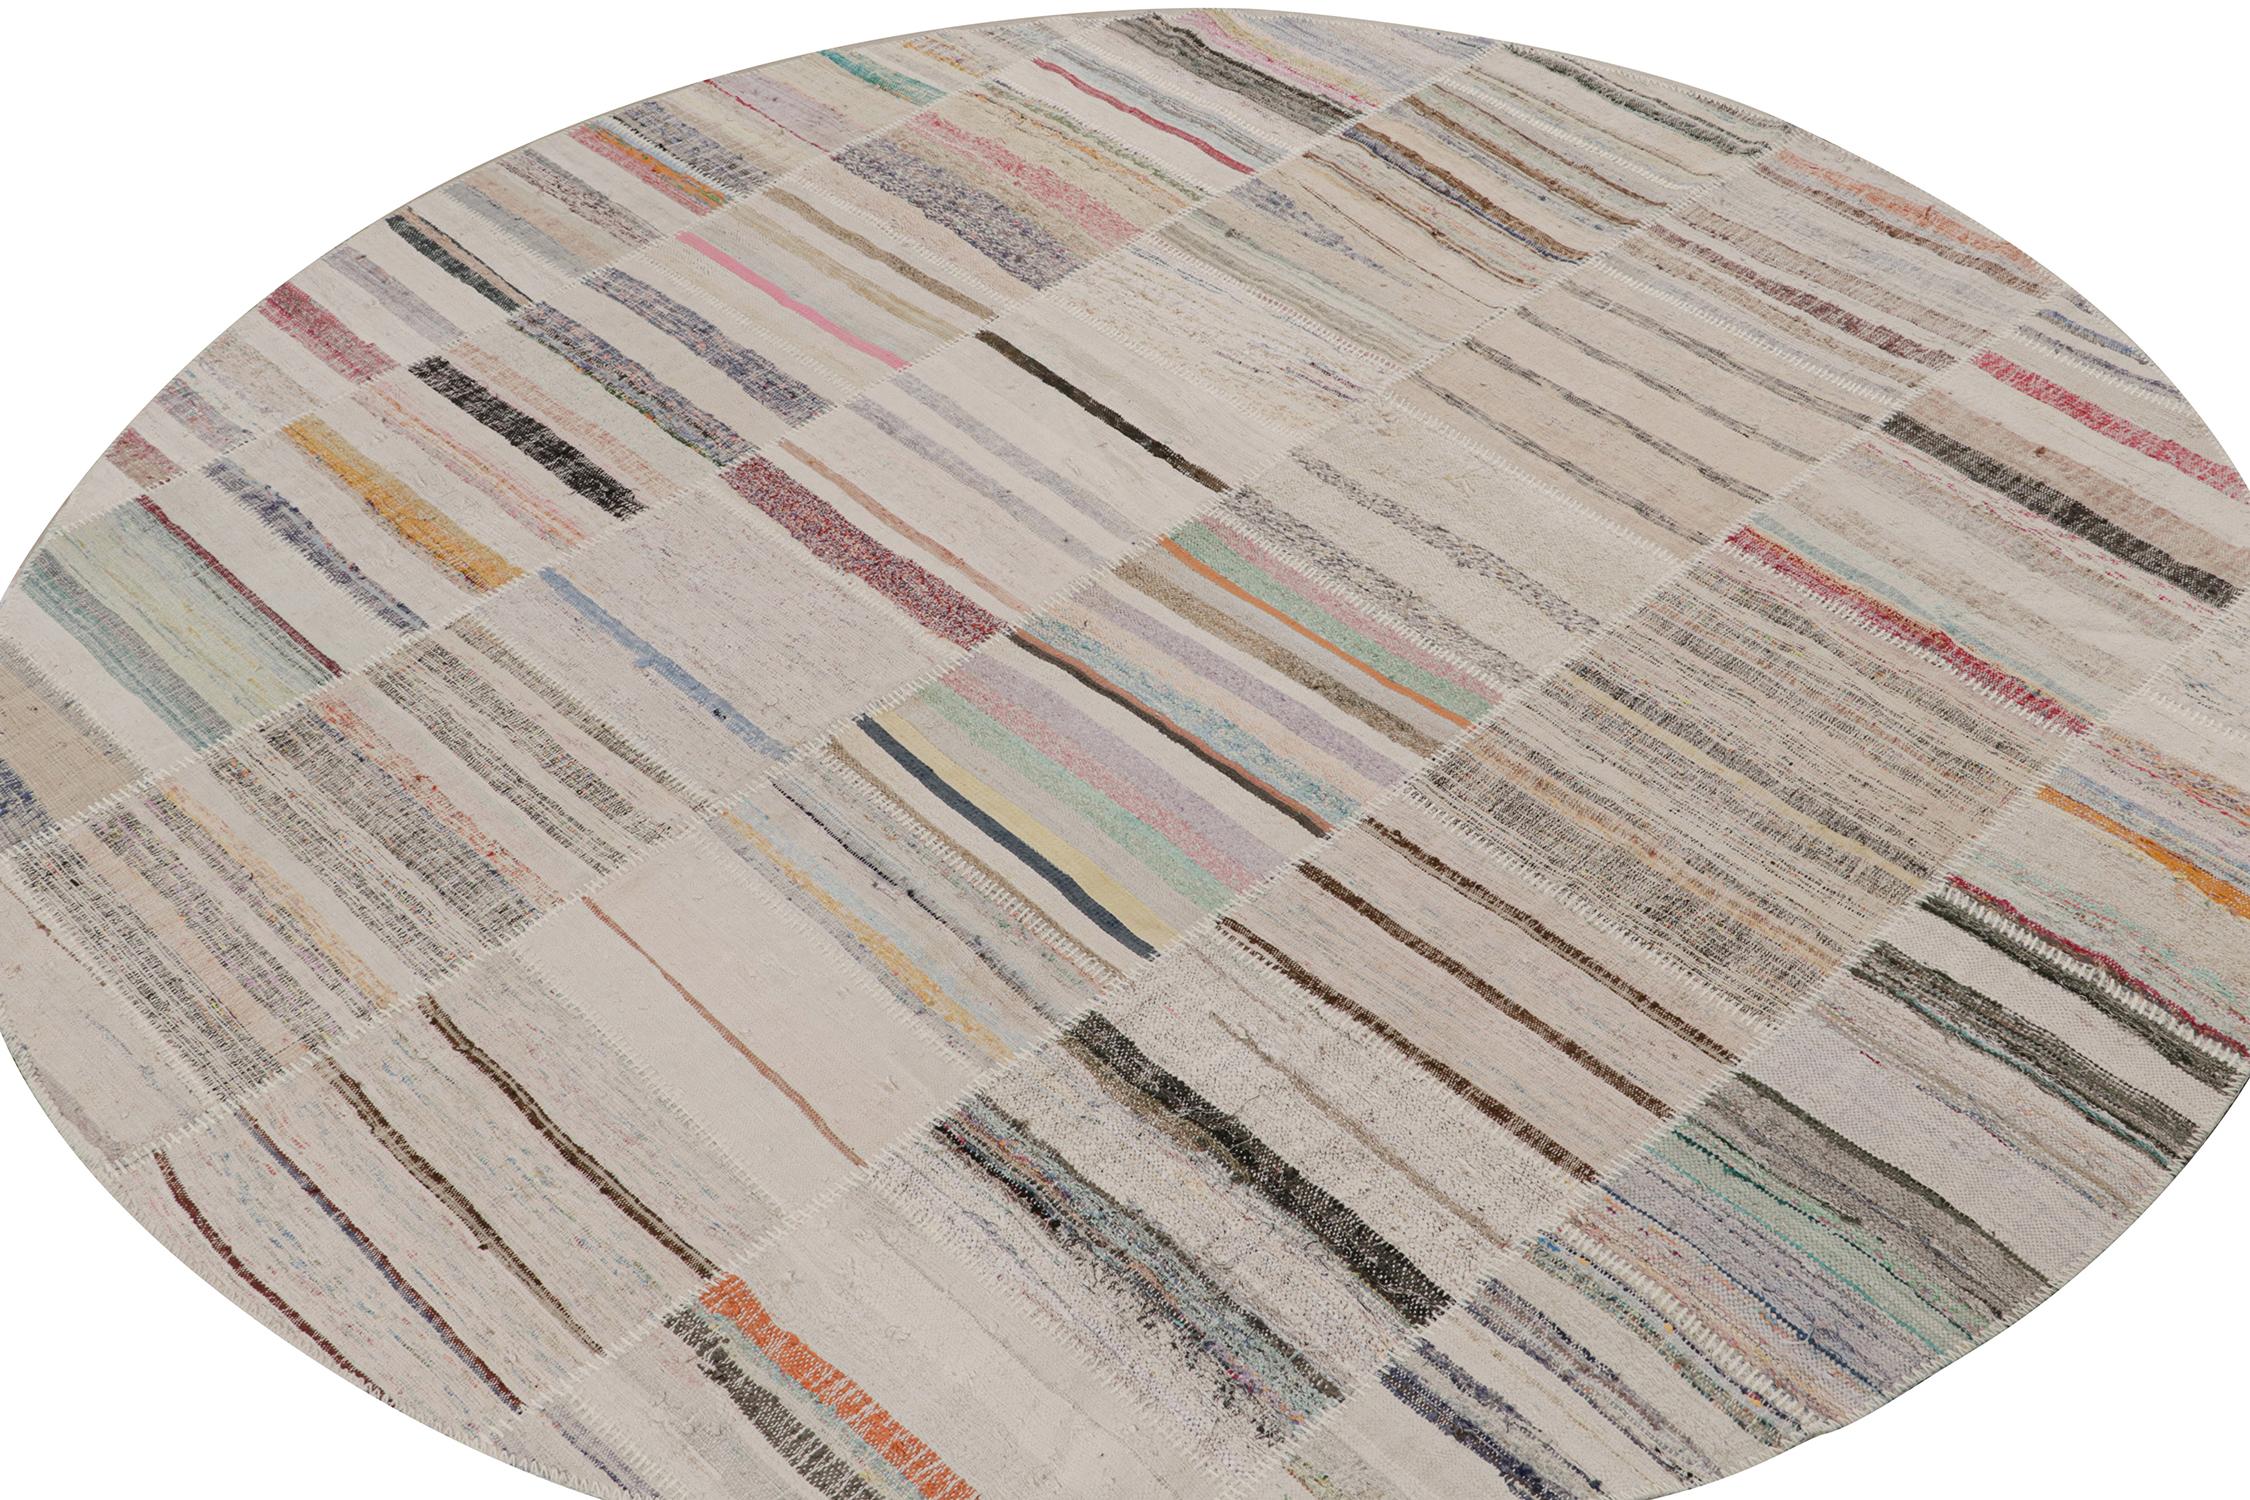 Rug & Kilim präsentiert einen modernen kreisförmigen 10-Fuß-Teppich aus seiner innovativen neuen Patchwork-Kelim-Kollektion. 

Über das Design: 

Bei dieser Flachgewebetechnik werden Vintage-Garne in polychromen Streifen und Schlieren